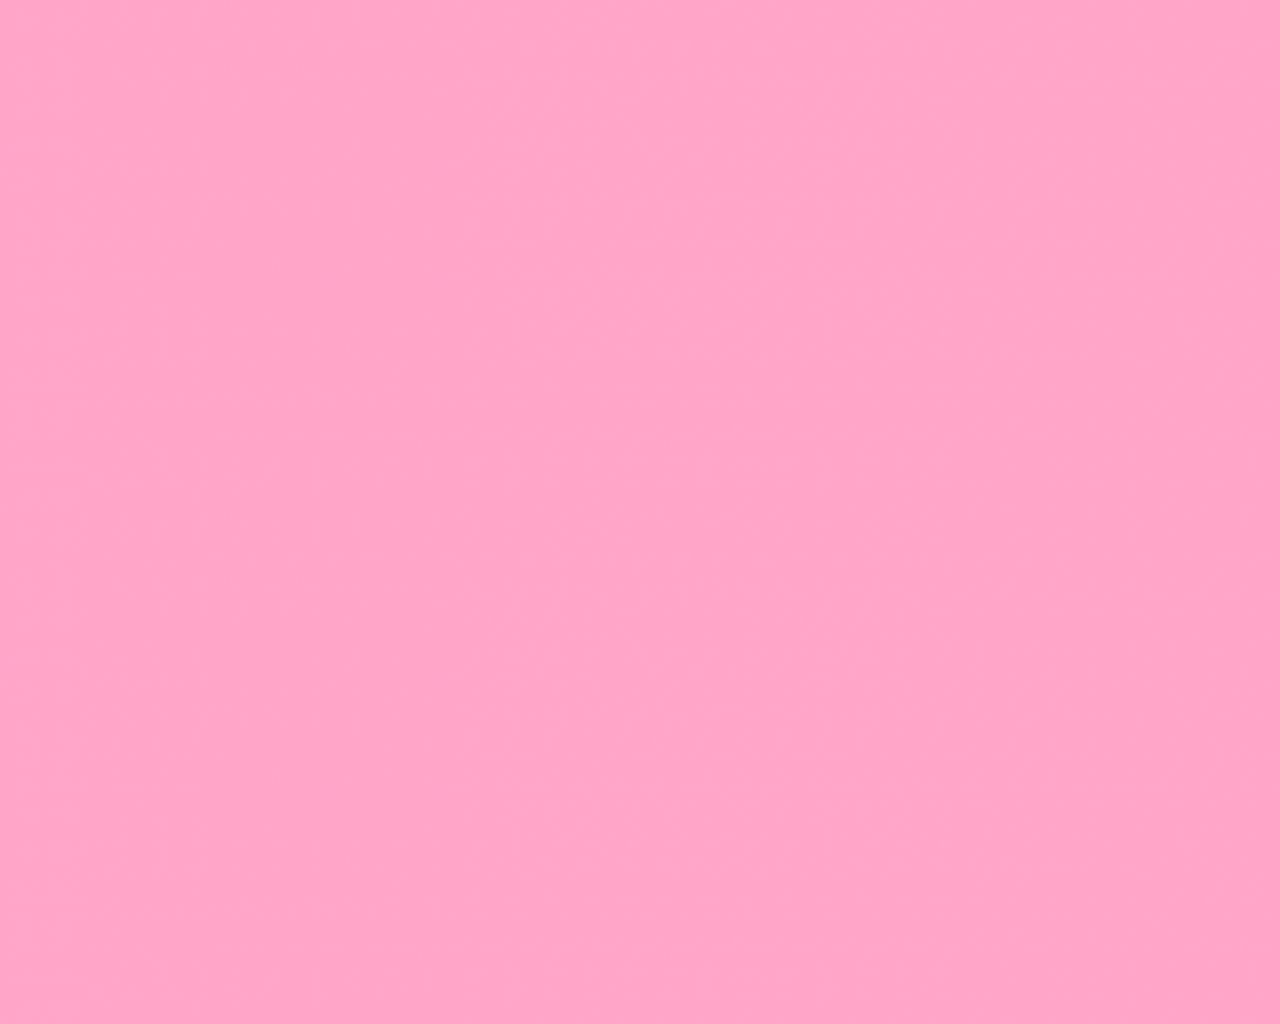 Hãy tìm cho mình một hình nền màu hồng đậm tuyệt đẹp để tôn lên vẻ đẹp thanh lịch và ngọt ngào của chiếc điện thoại hay laptop của bạn. Hình nền màu hồng đậm giúp tạo nên một không gian làm việc hoặc giải trí thật dễ chịu và tươi mới.